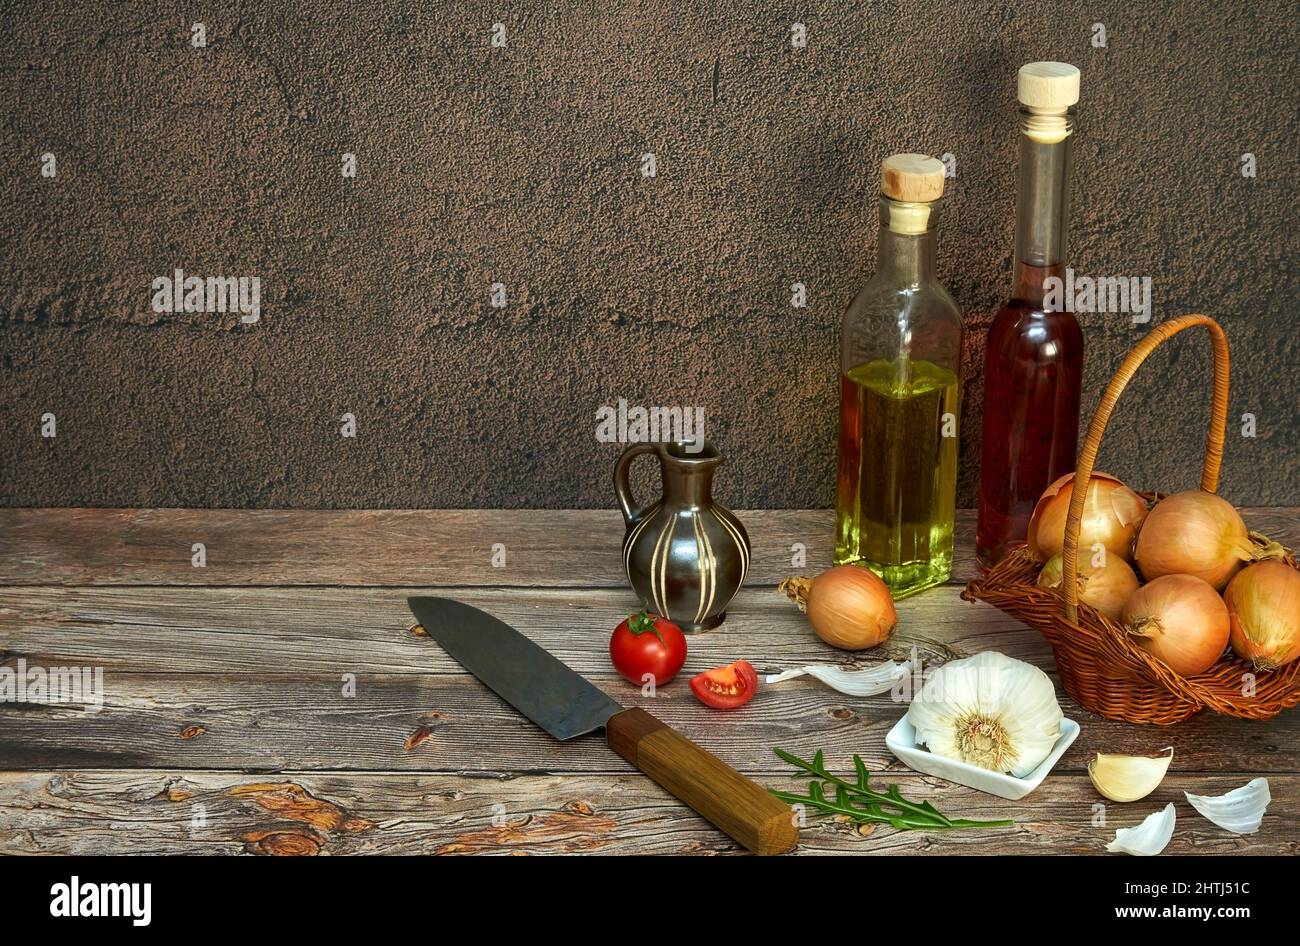 Küchenmotiv mit Zwiebel in einem Körbchen, Knoblauch, Tomaten, Rucola, Fruchtessig, und Öl mit Messer auf Holzuntergrund Stock Photo